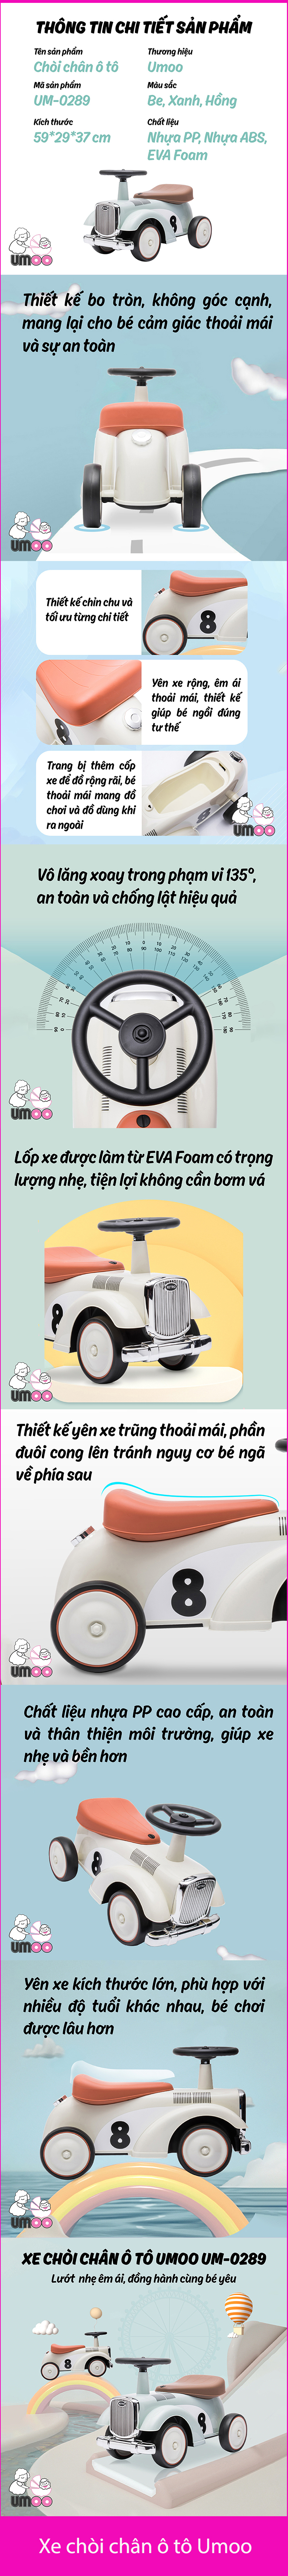 infographic xe chòi chân ô tô Umoo cho bé yêu